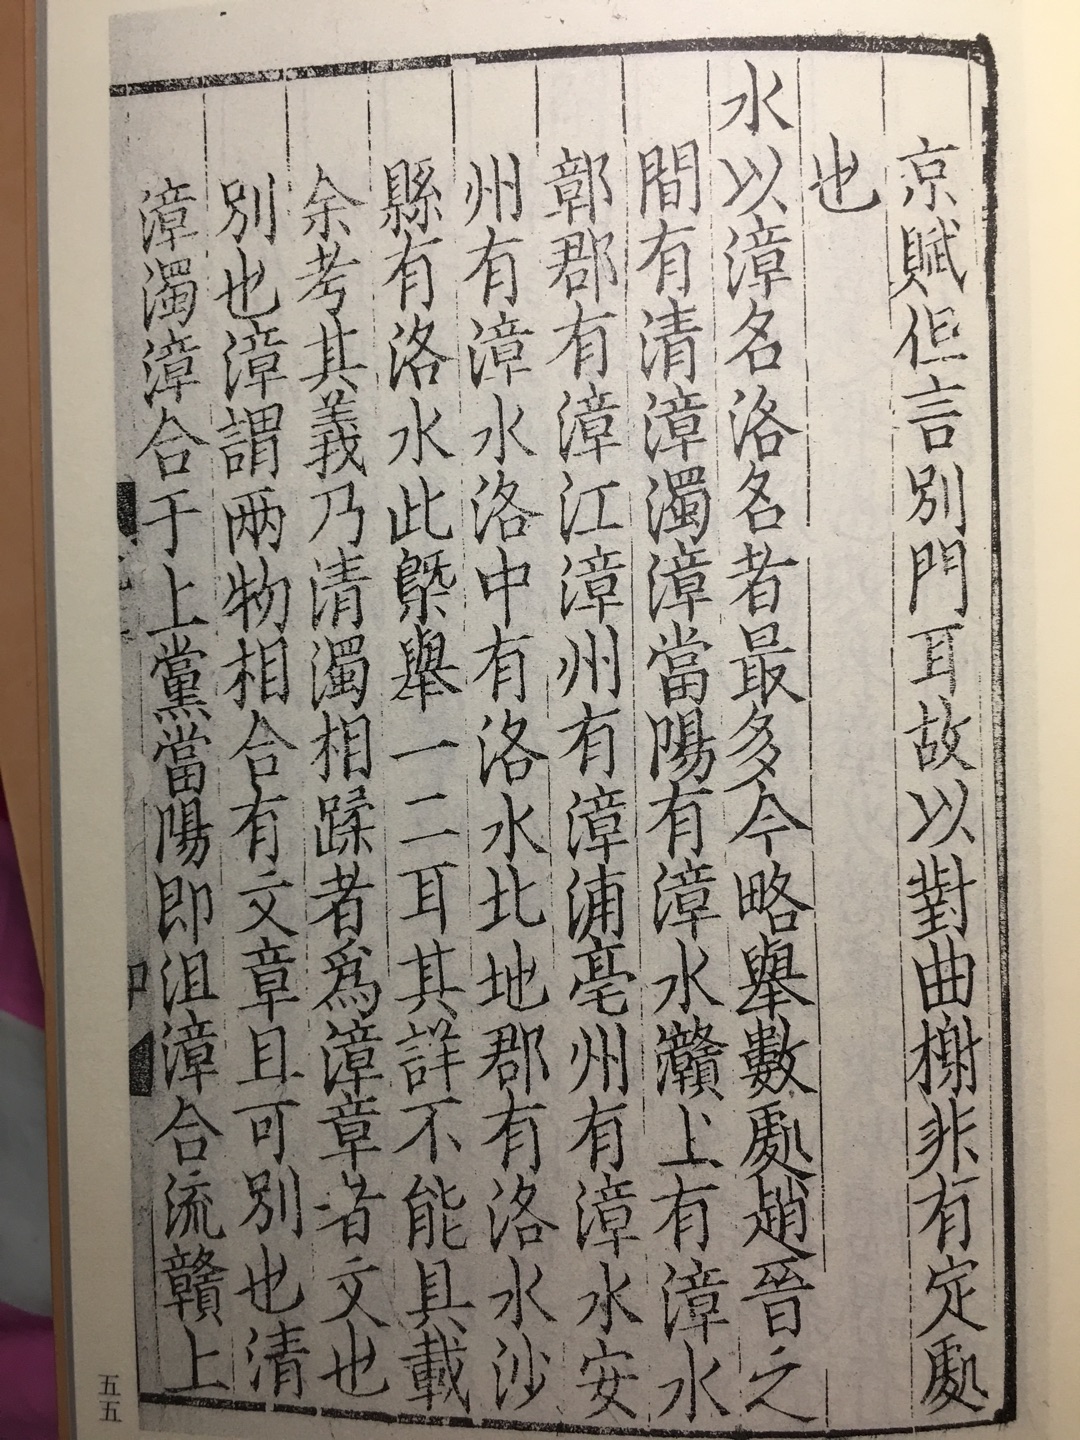 《梦溪笔谈》是一部涉及中国古代自然科学、工艺技术及社会历史现象的综合性笔记体著作。本书为现存zui早的刻本即元大德刻本，原书印刷优美，流传清晰，数易藏主，1965年在周恩来总理主持下从香港购回，现藏于国家图书馆。《梦溪笔谈》共分26卷，内容包括天文、数学、物理、化学、生物等学科，反映了北宋时期的科技成就。    快递辛苦了，大过年的，辛苦钱啊！